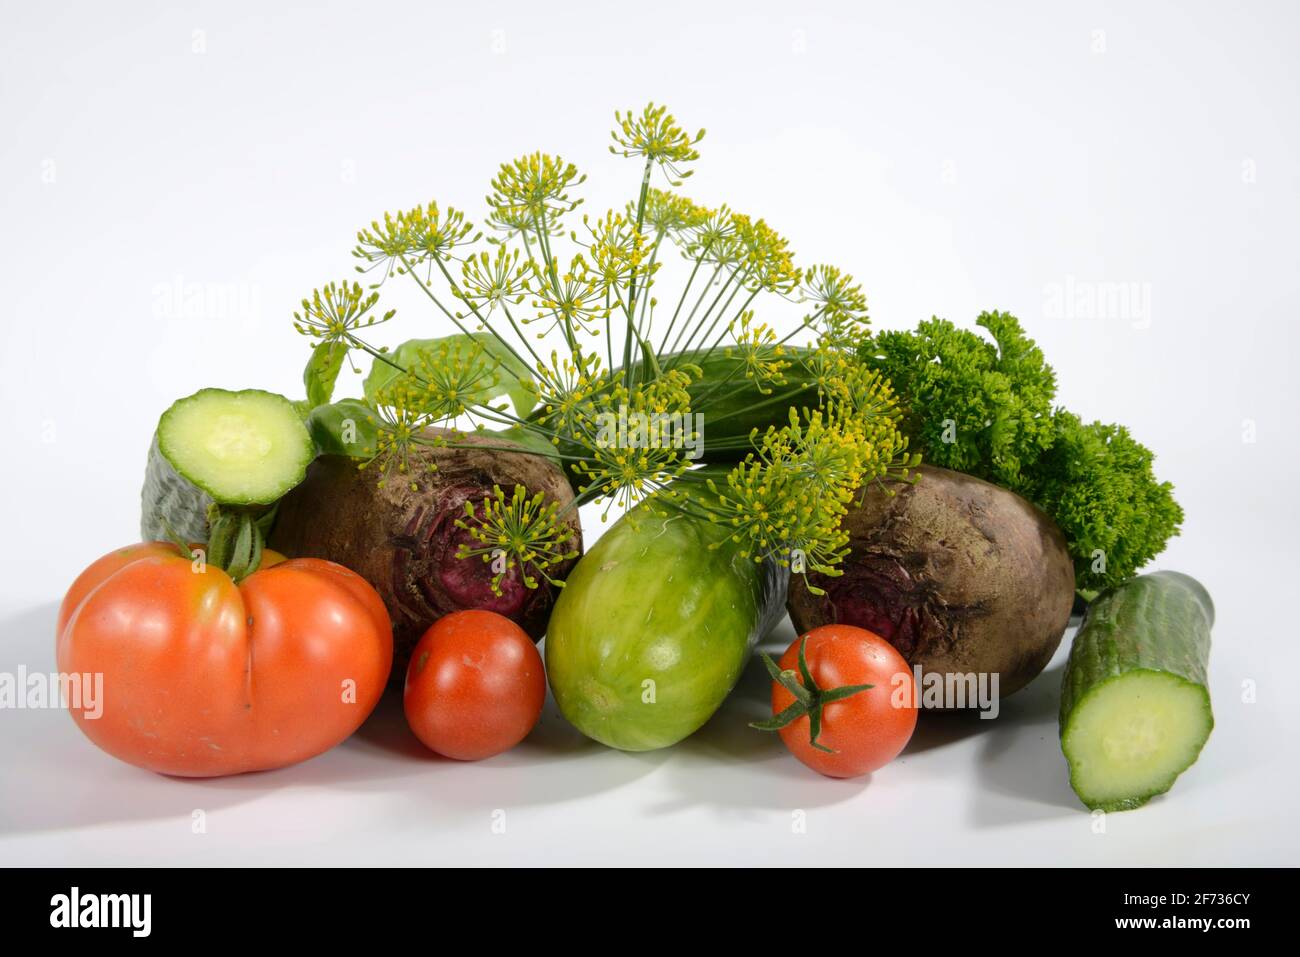 Various vegetables, cucumber, tomatoes (Solanum lycopersicum), basil (Ocimum basilicum), parsley (Petroselinum crispum), dill (Anethum graveolens) Stock Photo